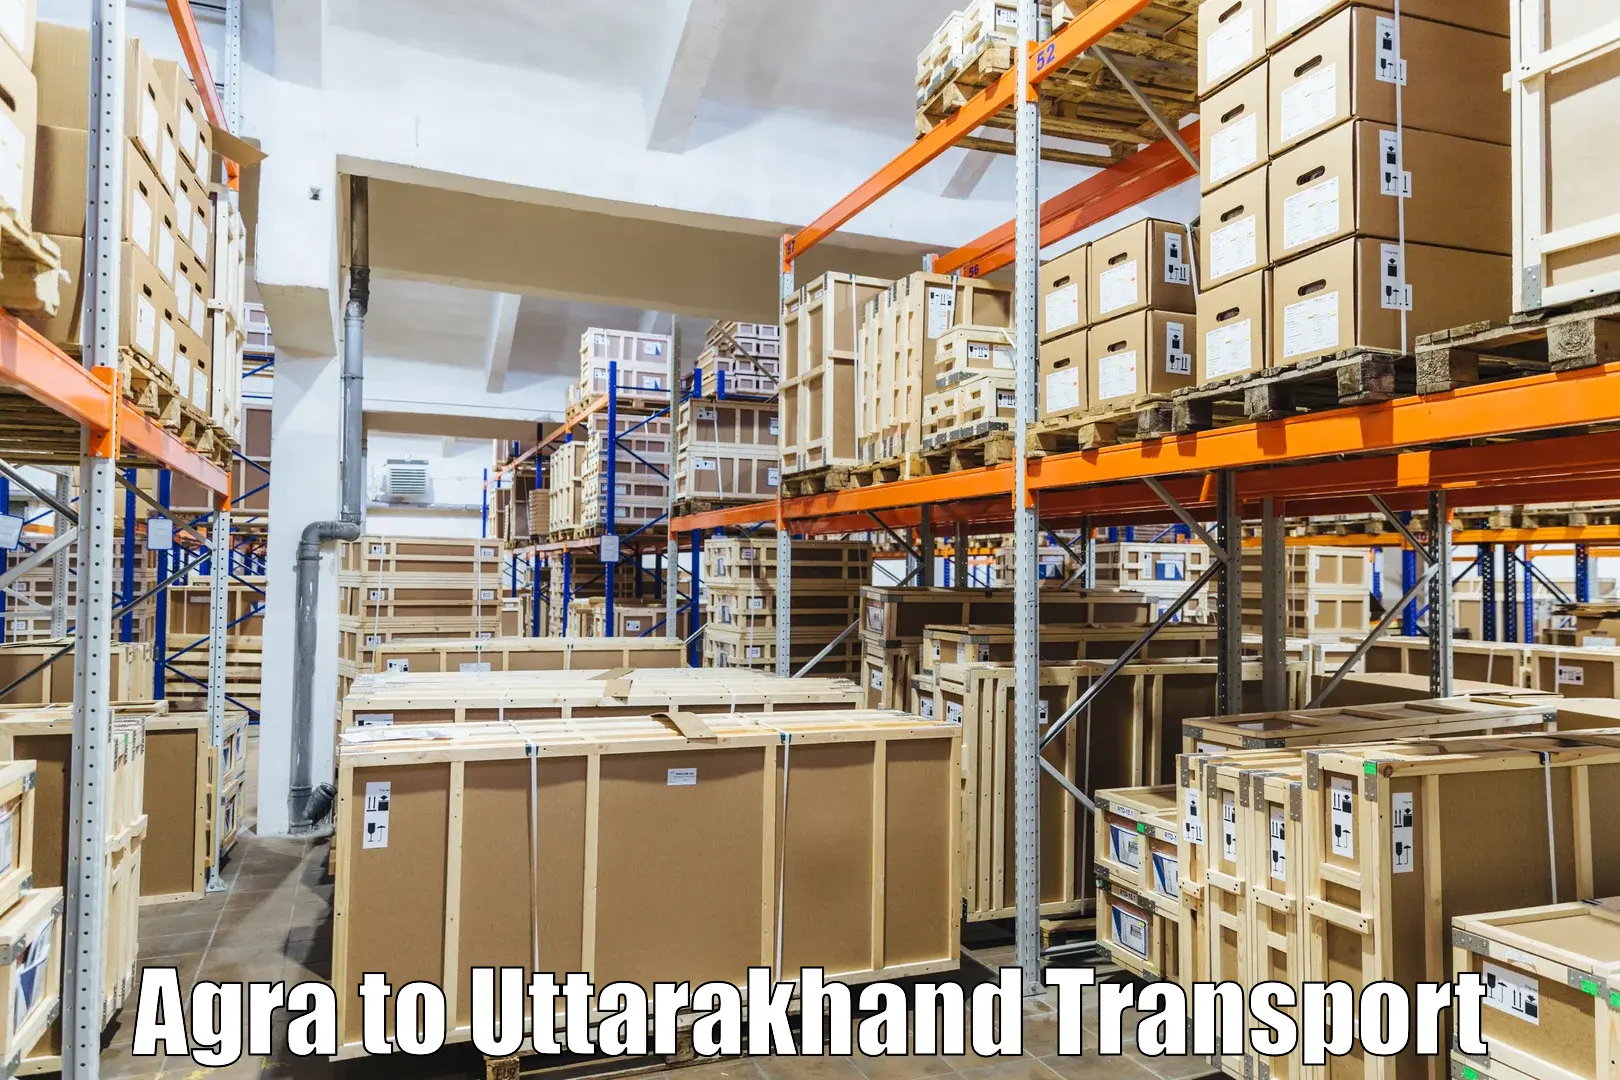 Transport in sharing Agra to Uttarakhand